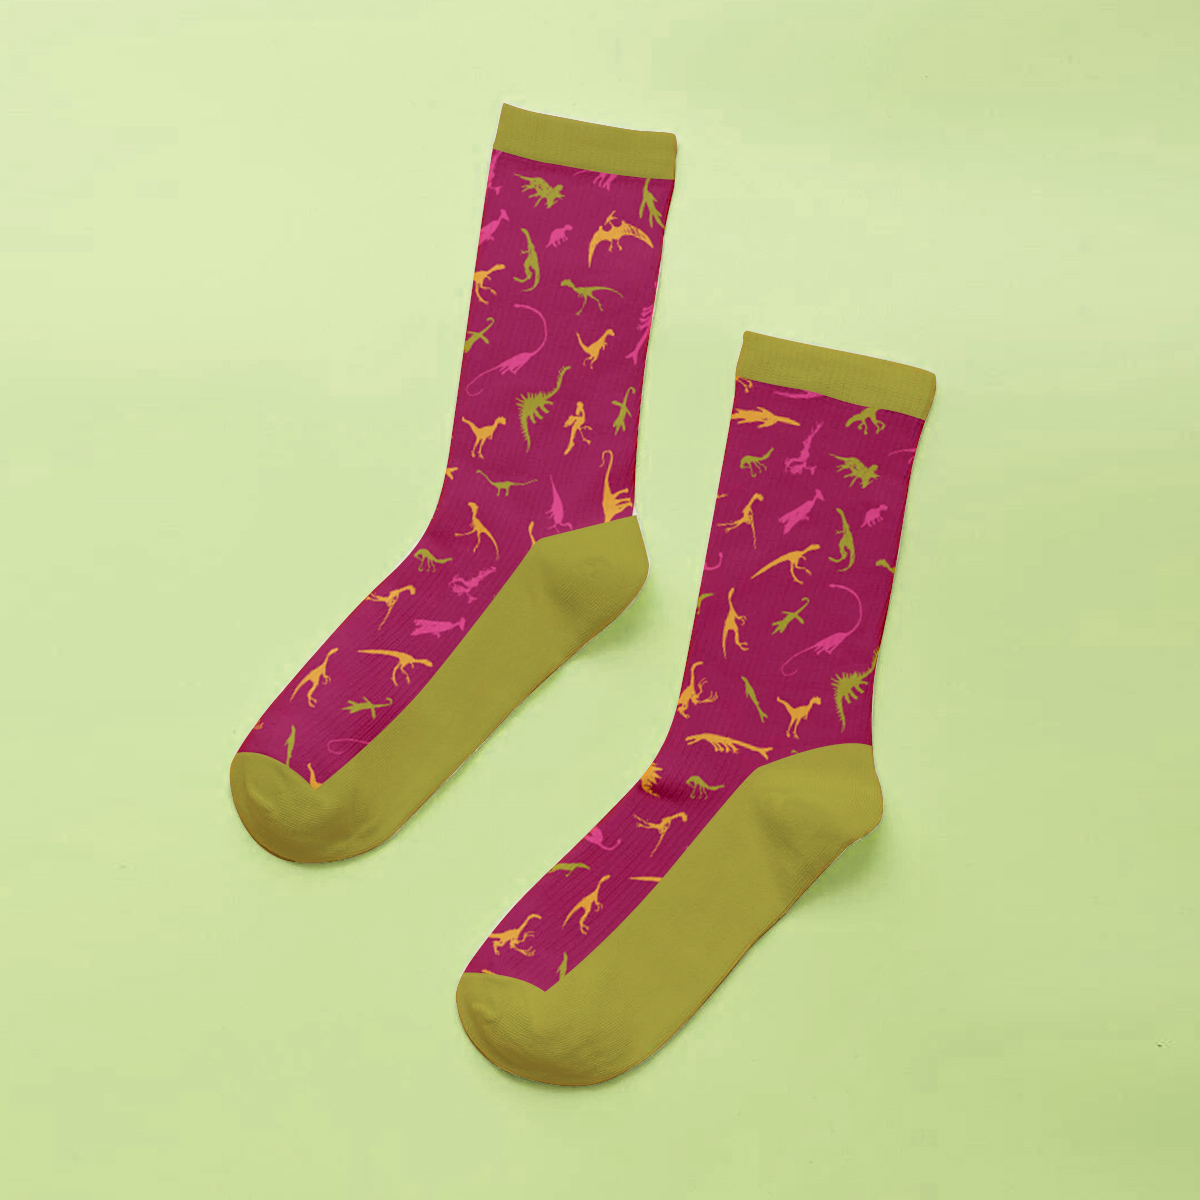 Customised Socks